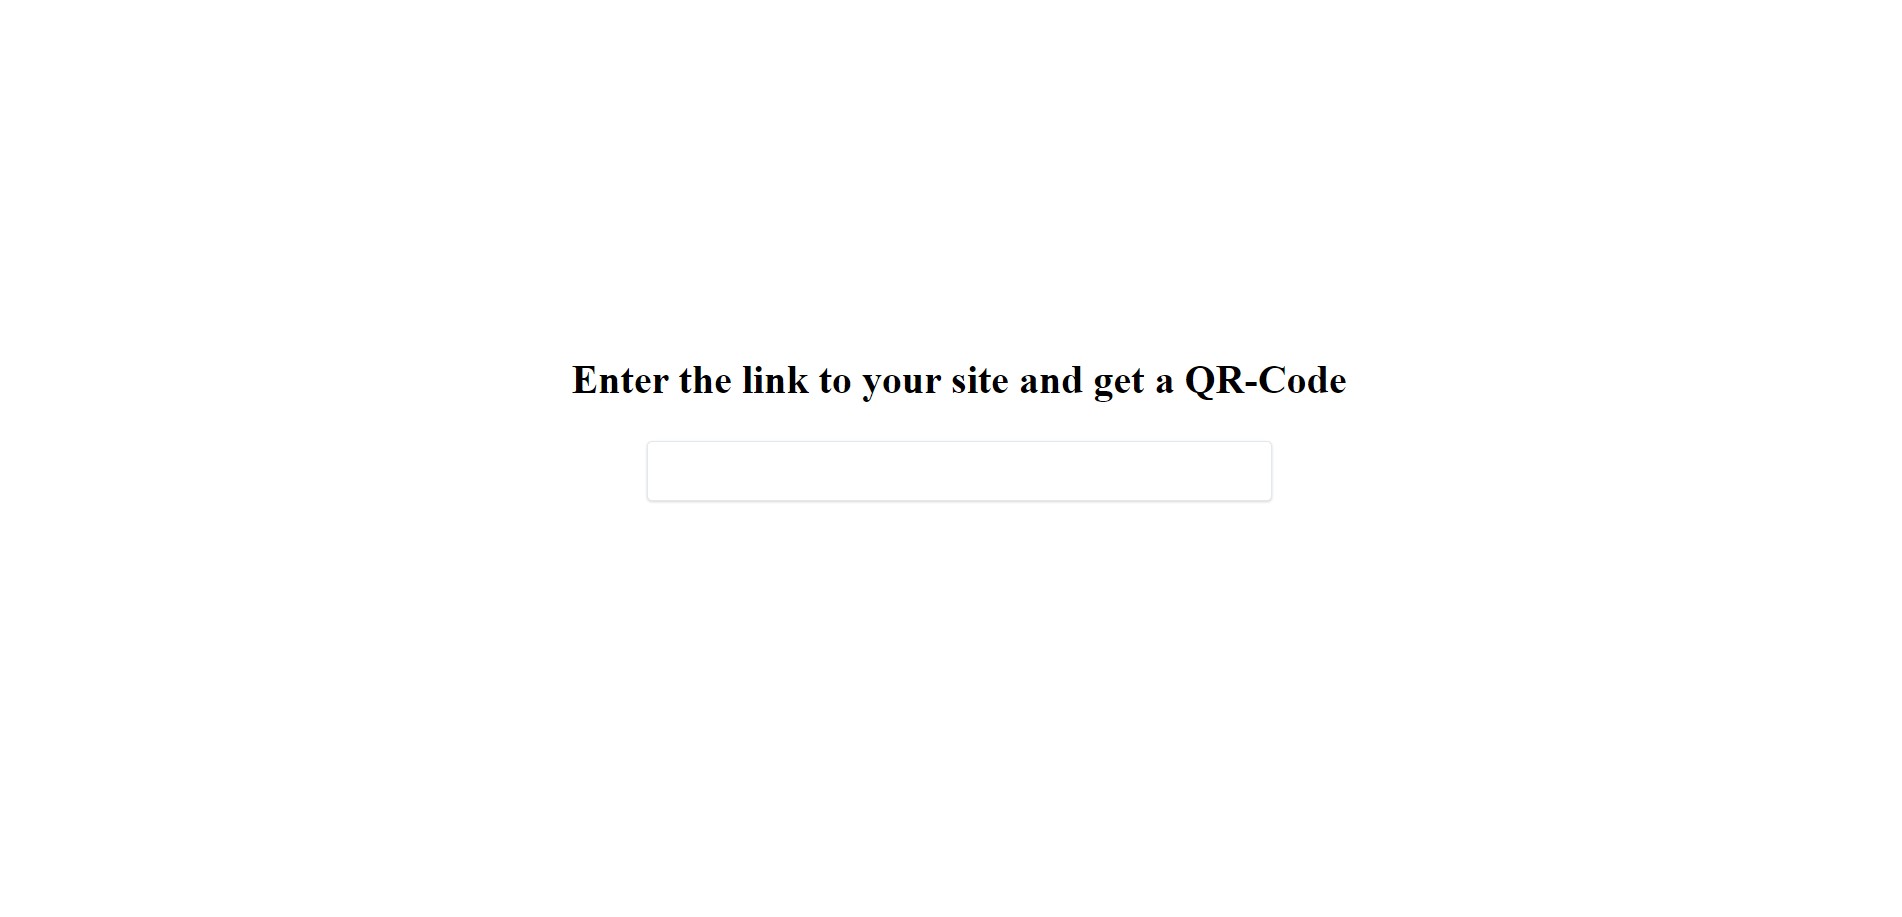 QR-code generator (JS)